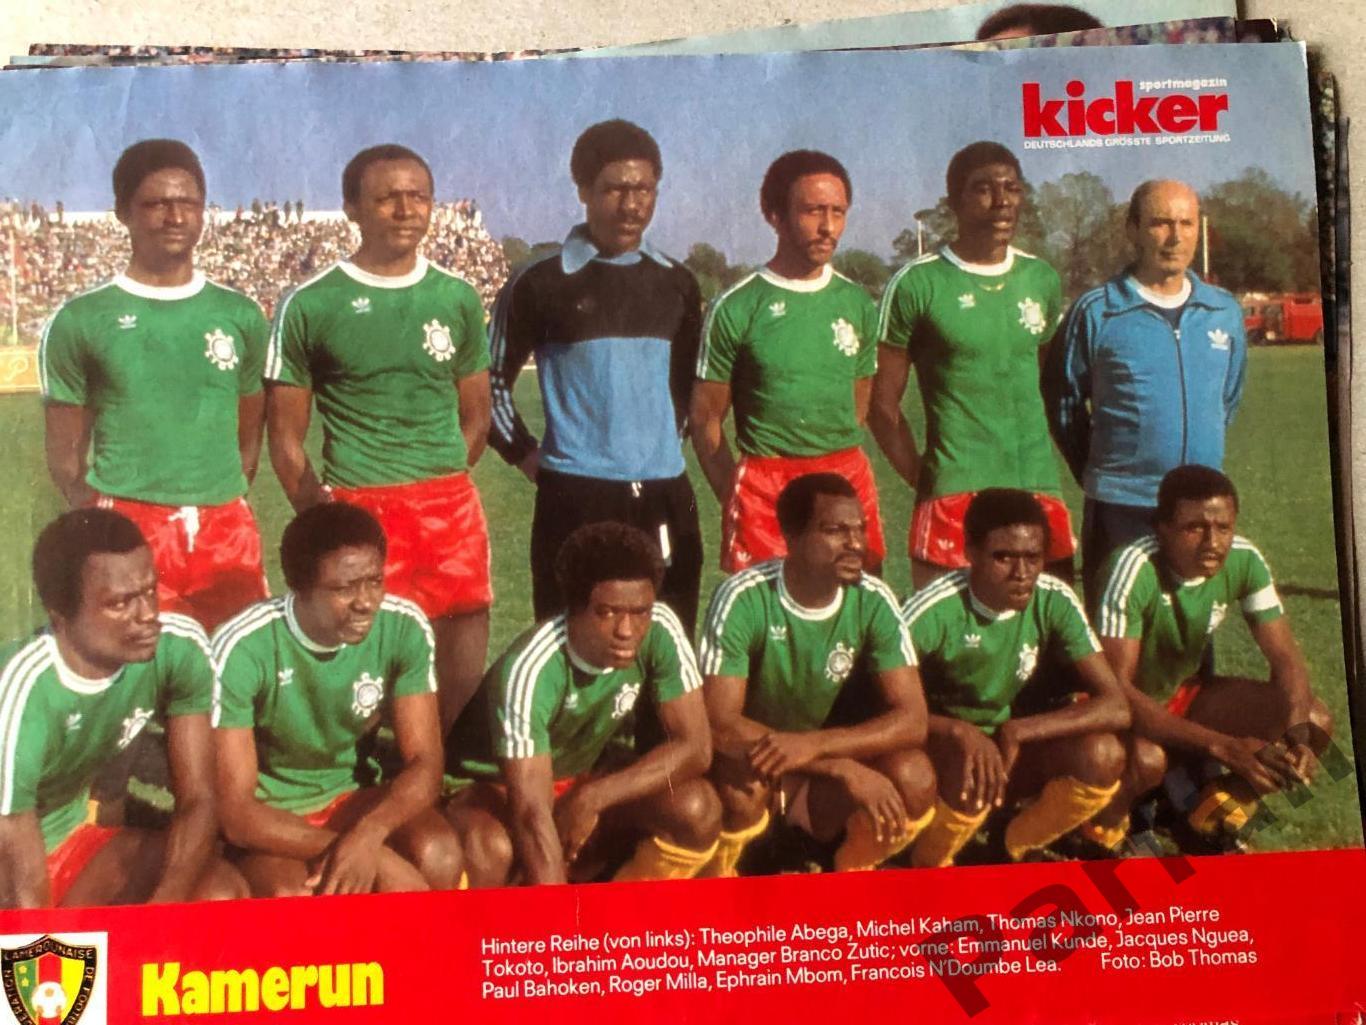 Постер, Kicker Збірна Камерун 1982